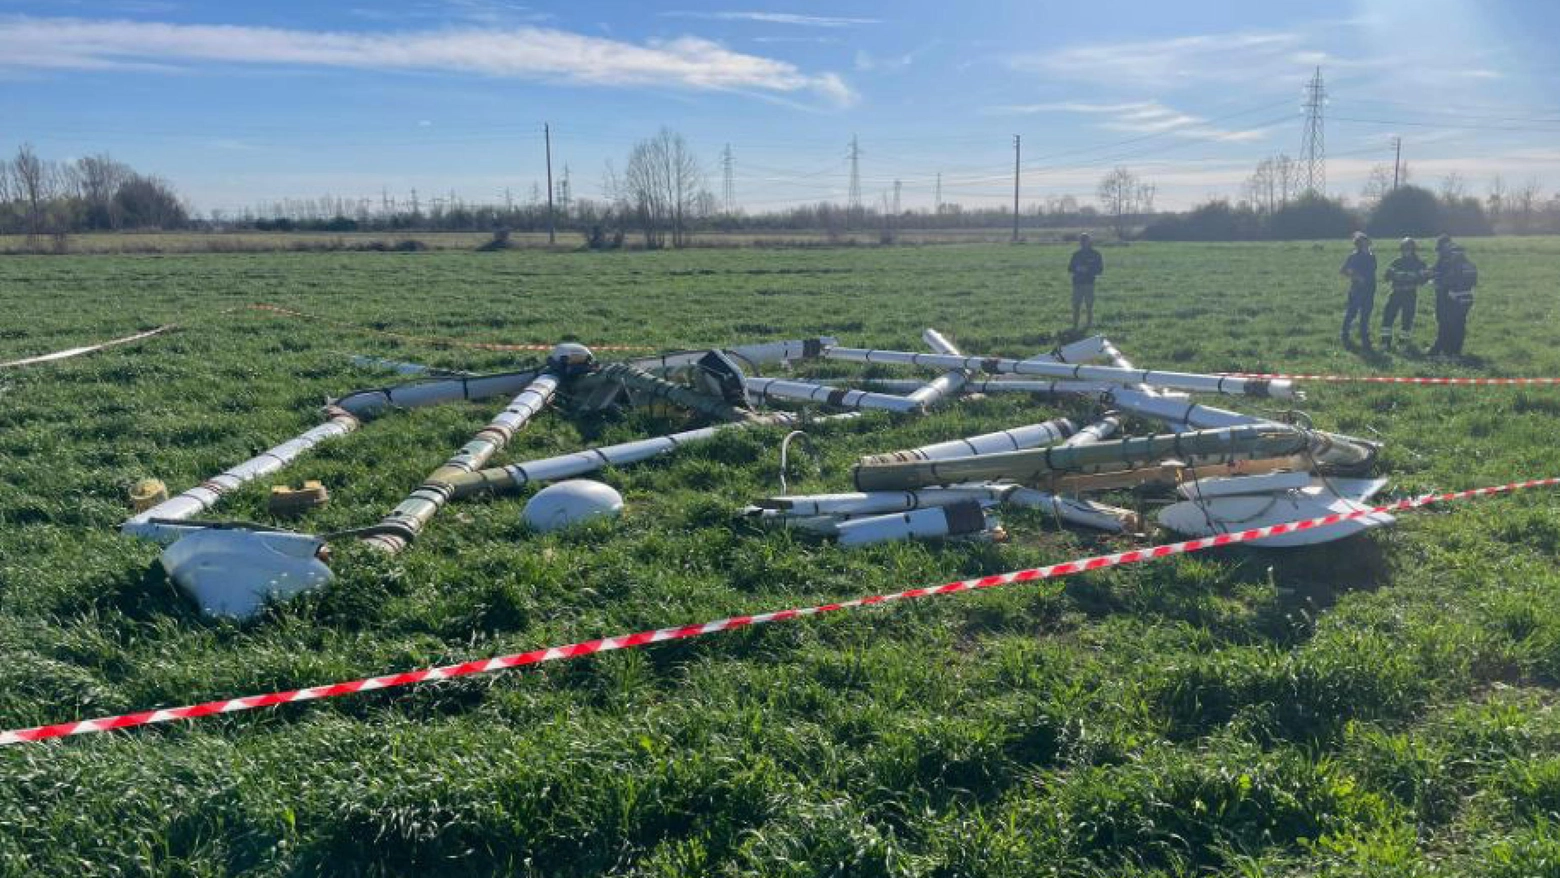 L'enorme antenna per la ricerca disorgenti caduta da un elicottero a Brescia